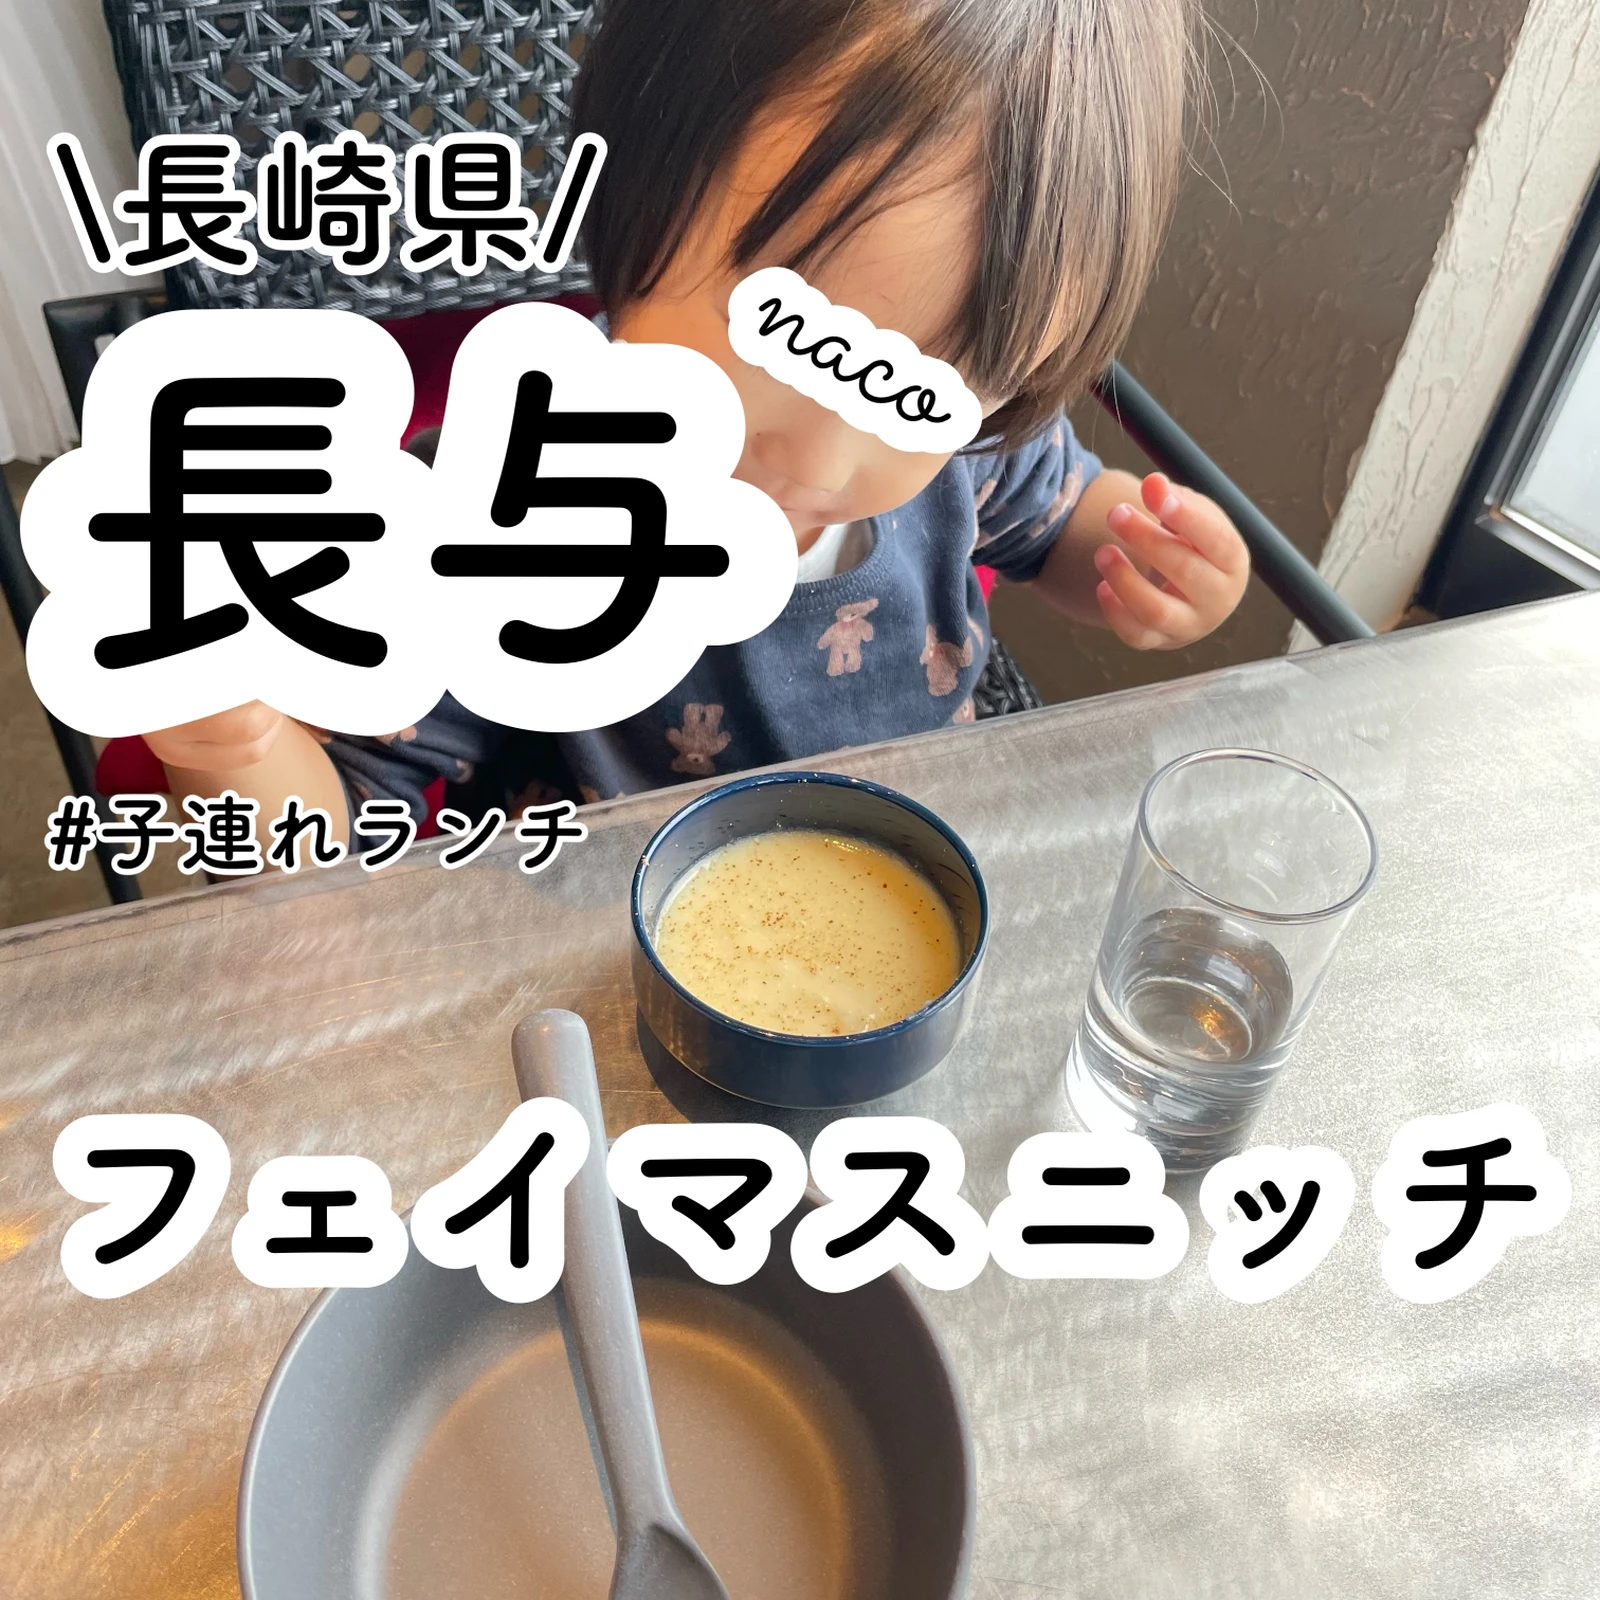 長崎で1番オシャレなカフェ フェイマスニッチ Naco 福岡子連れおでかけが投稿したフォトブック Lemon8